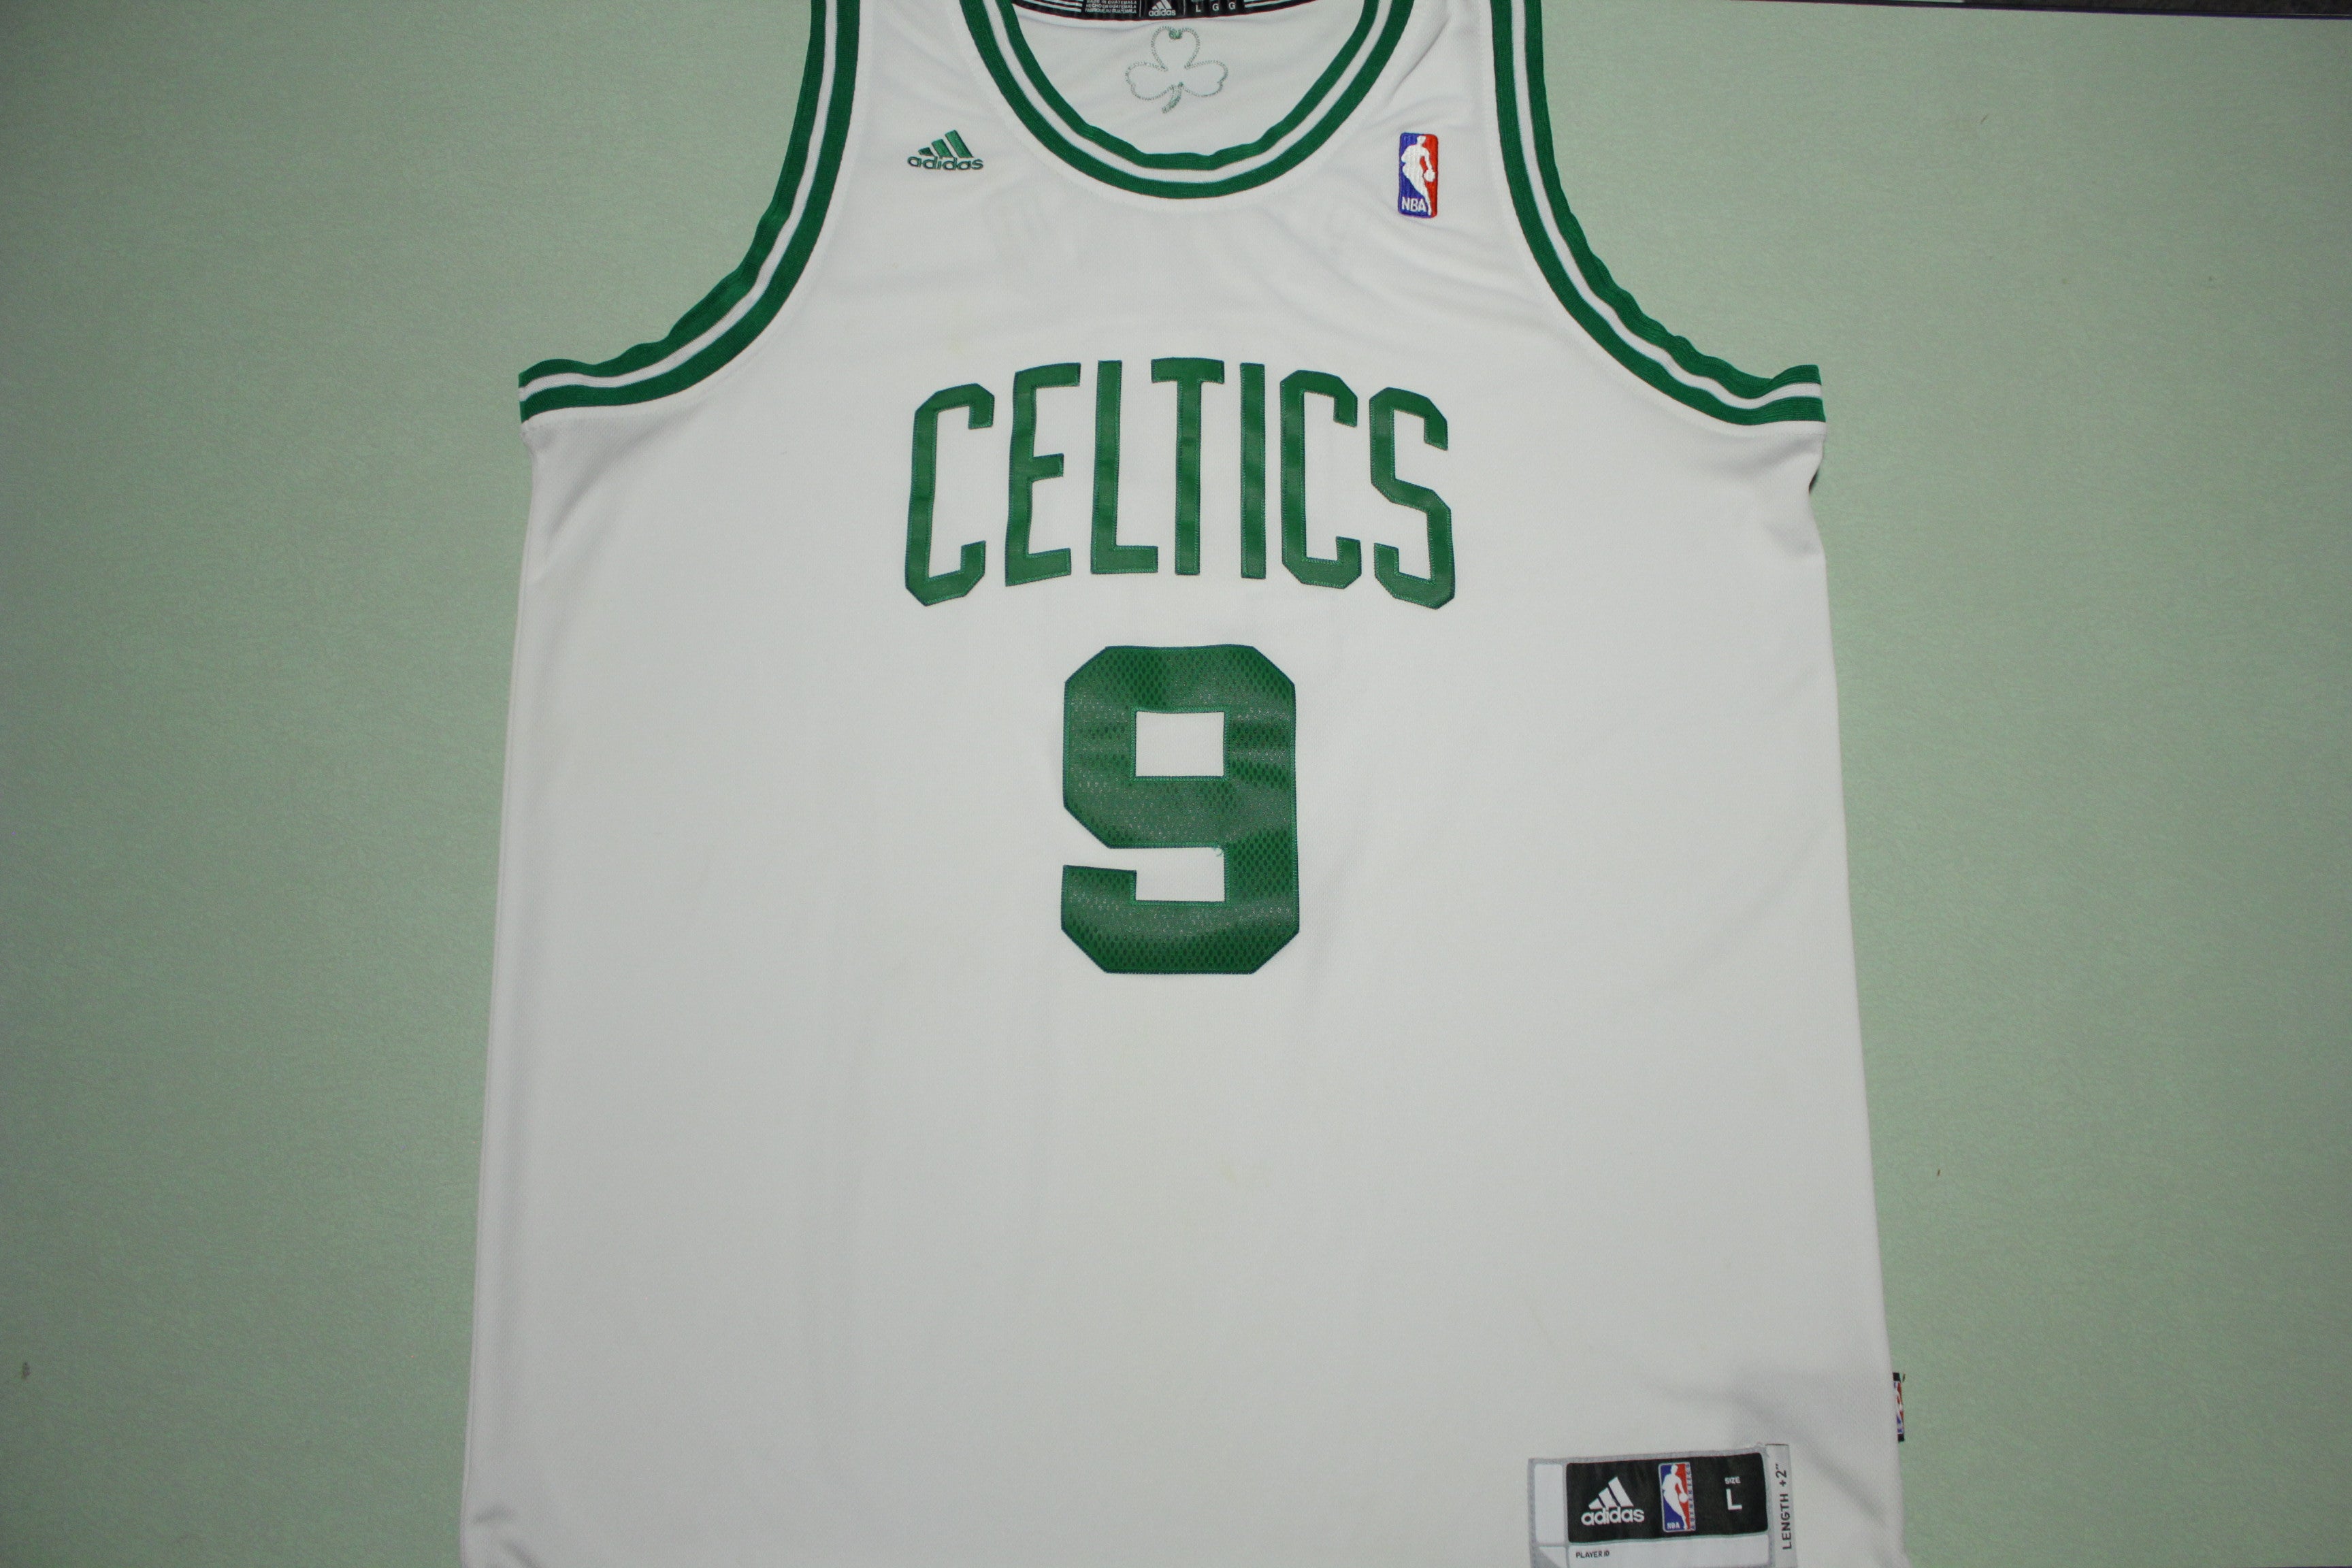 Boston Celtics Adidas Hardwood Classics Shorts size Large NEW with tags.